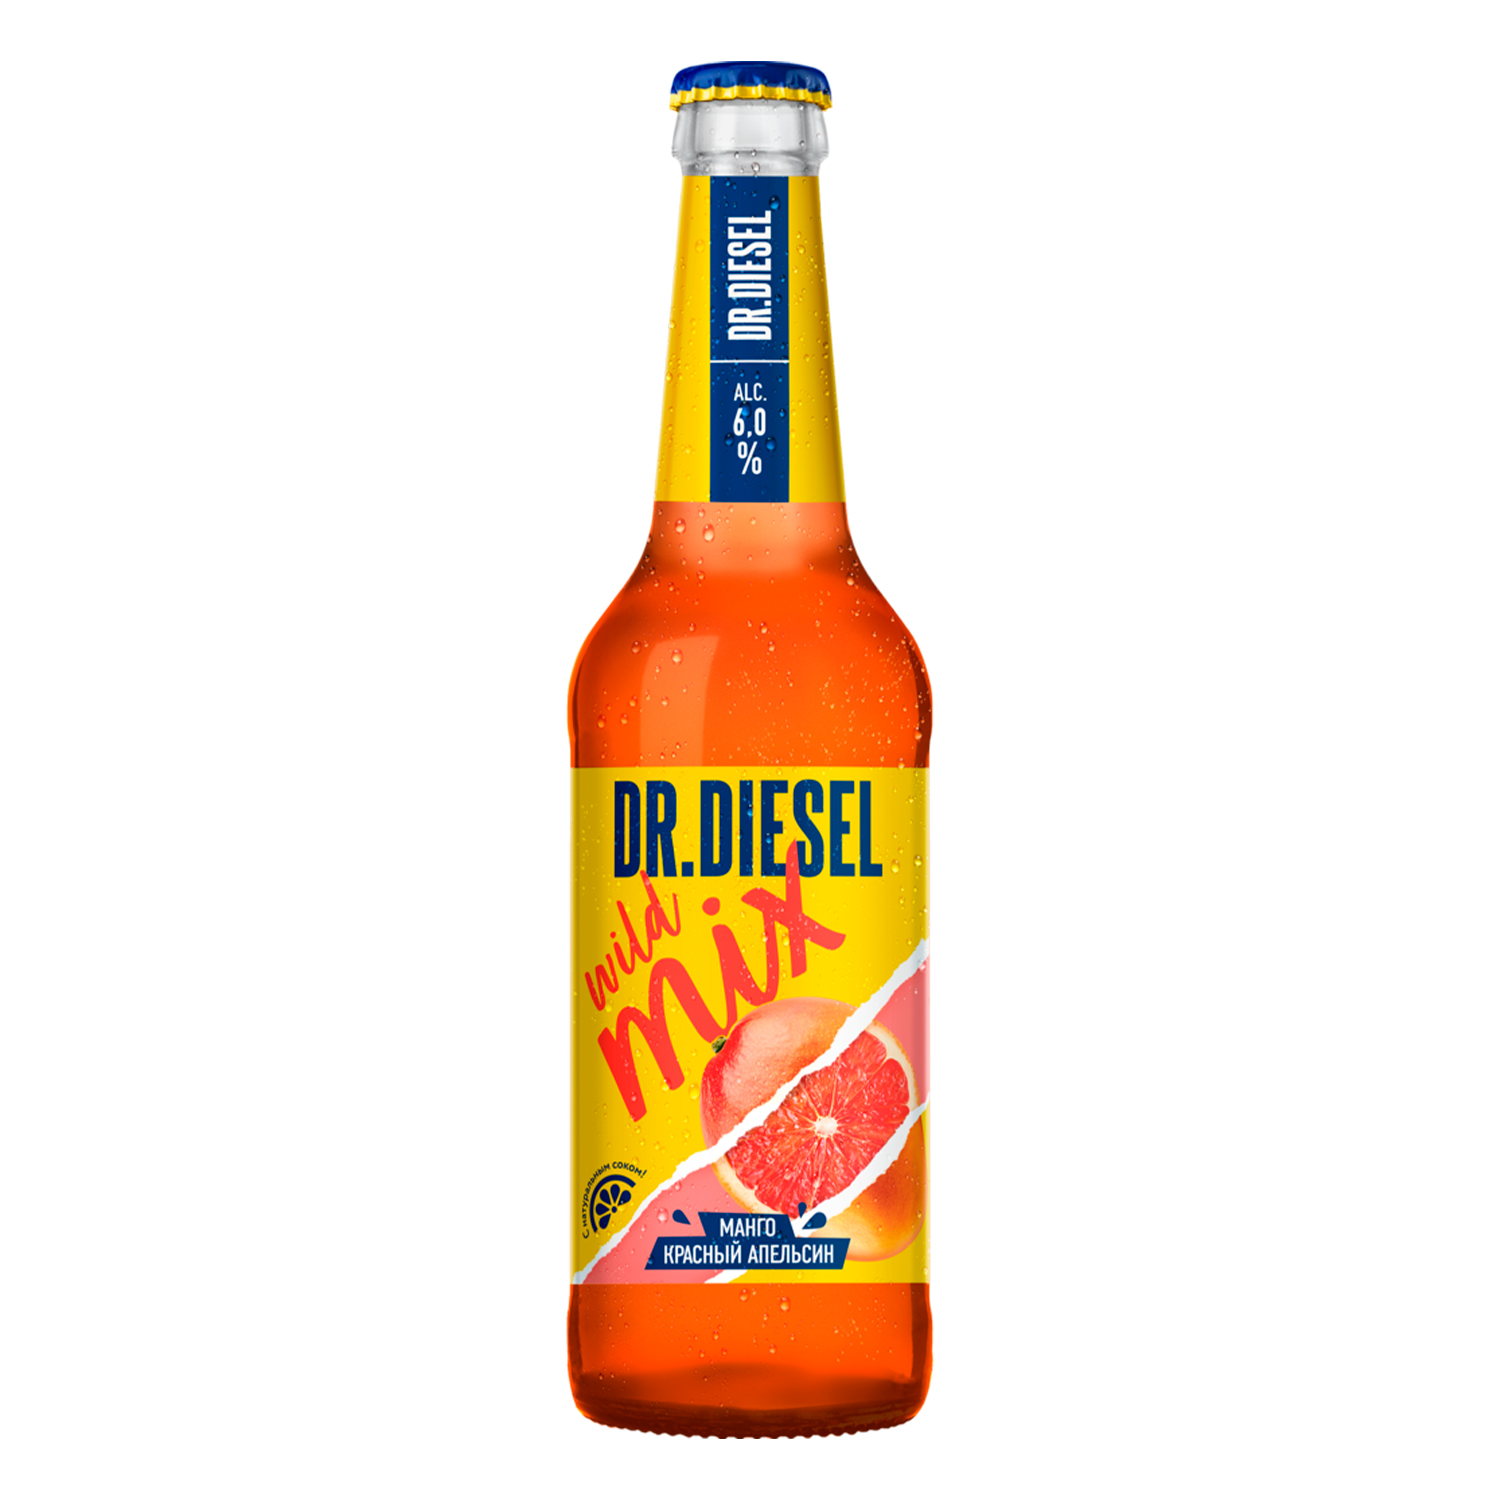 Mr diesel. Доктор дизель пиво манго красный апельсин. Пивной напиток доктор дизель манго и красный апельсин 6 0.45л. Пивной напиток Dr Diesel. Dr Diesel манго красный апельсин.